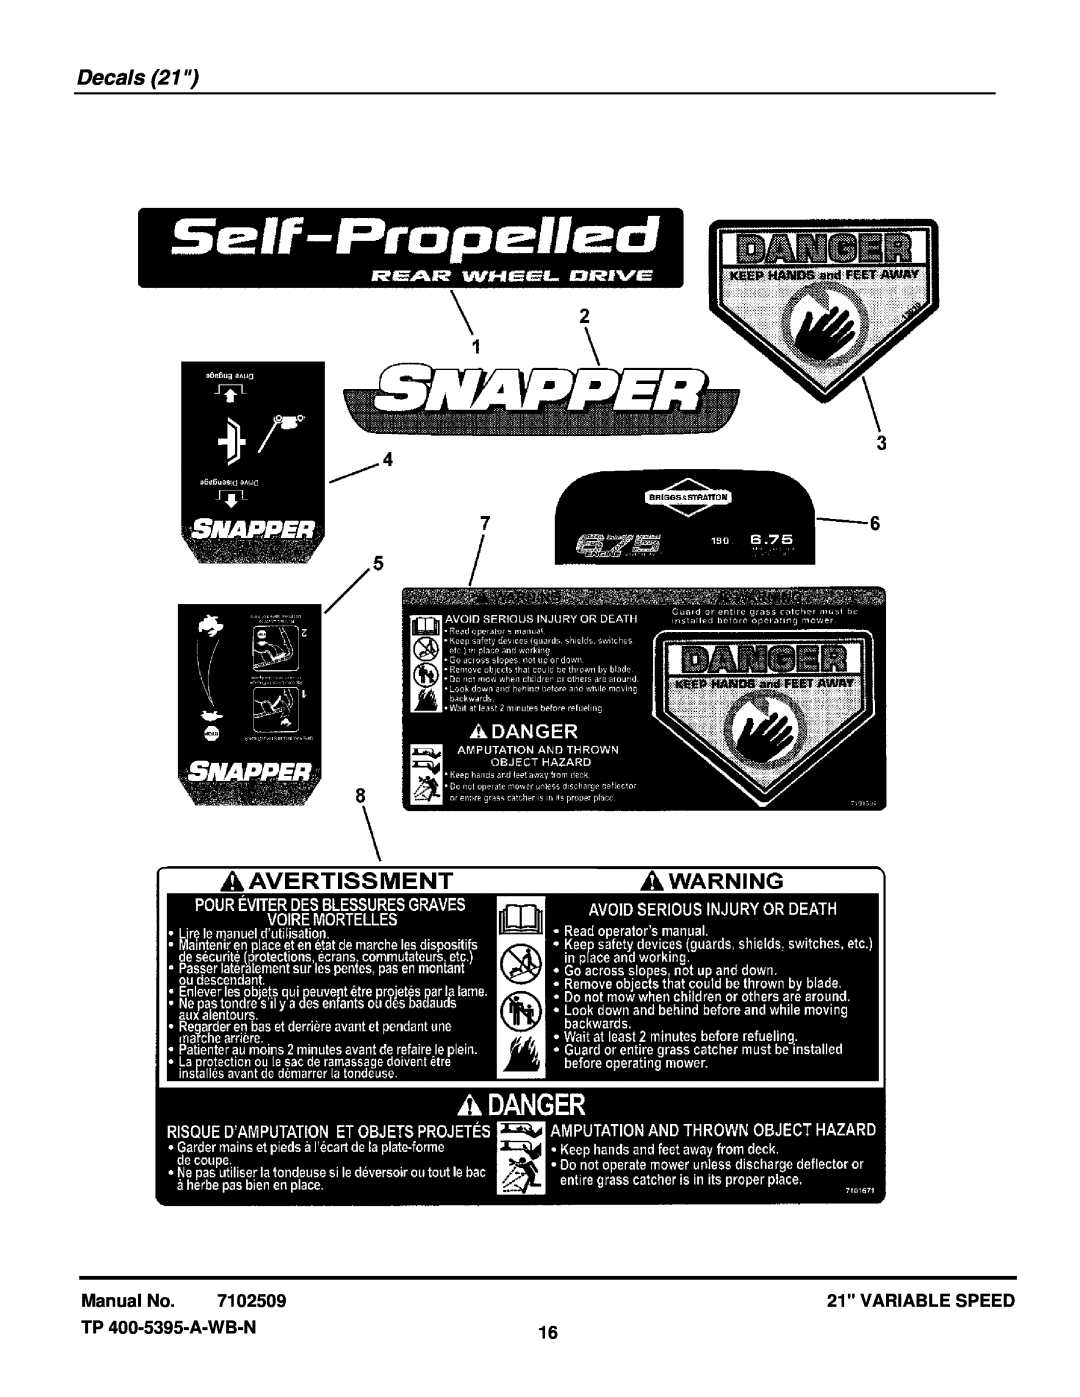 Snapper NSPV21675, NSPV21675E, SPV21675, SPV21675E, SPV21675EFC, SPV21675FC Decals, Manual No, 7102509, Variable Speed 